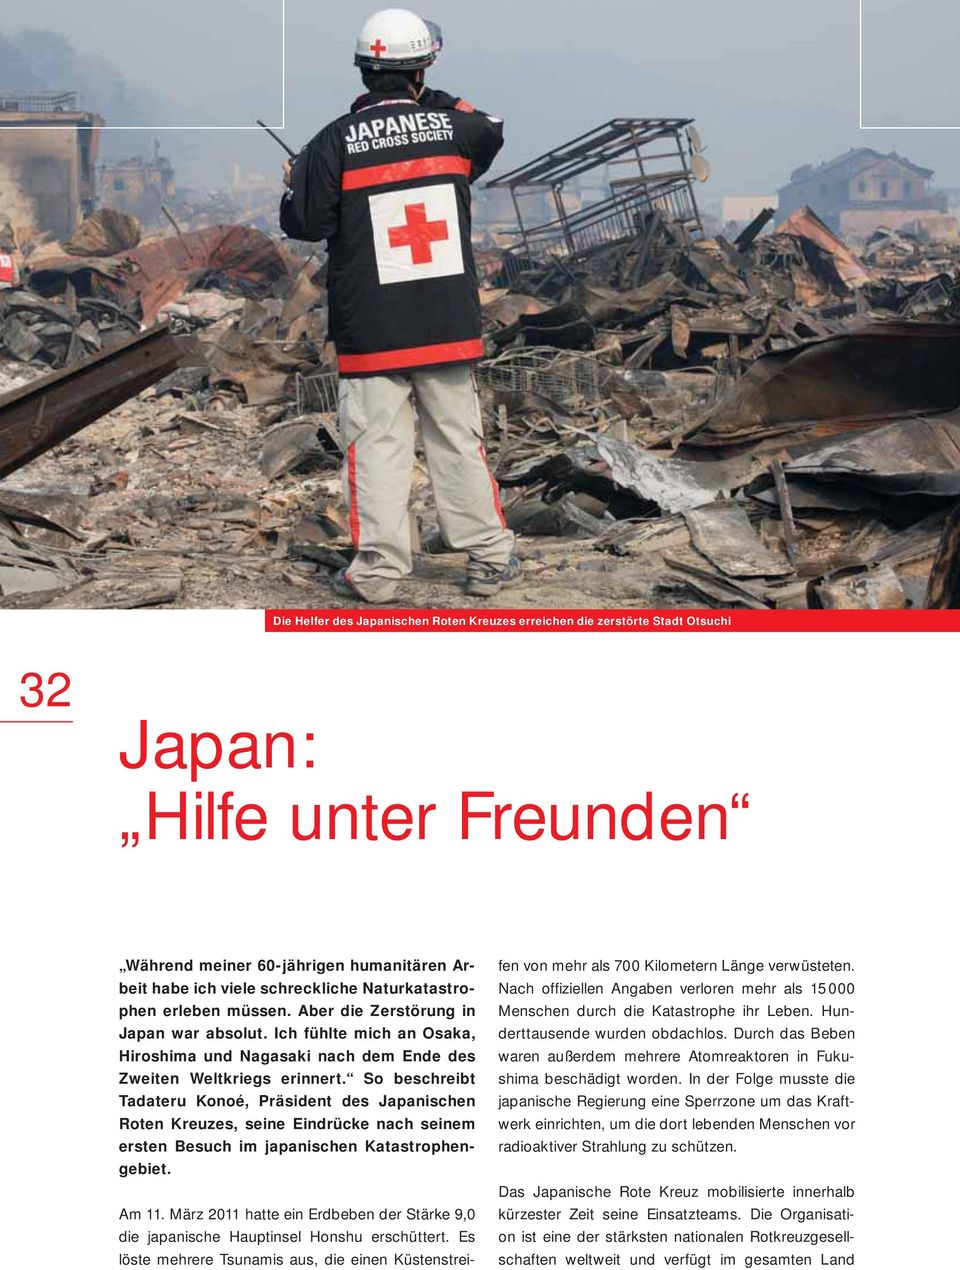 So beschreibt Tadateru Konoé, Präsident des Japanischen Roten Kreuzes, seine Eindrücke nach seinem ersten Besuch im japanischen Katastrophengebiet. Am 11.